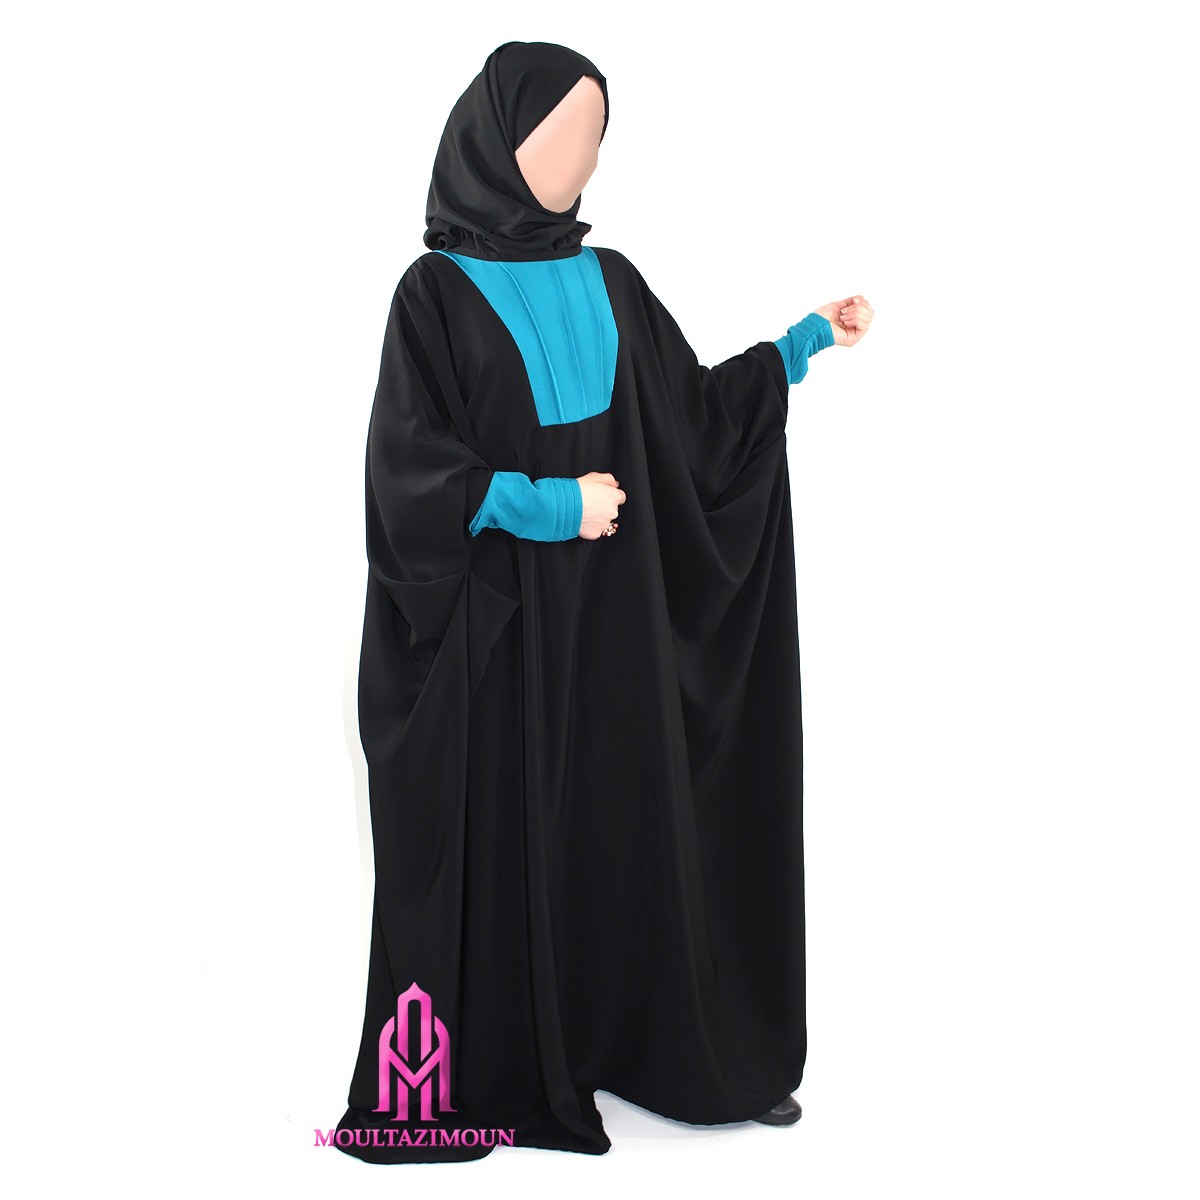 Conseil morpho: enfin une abaya qui me va !